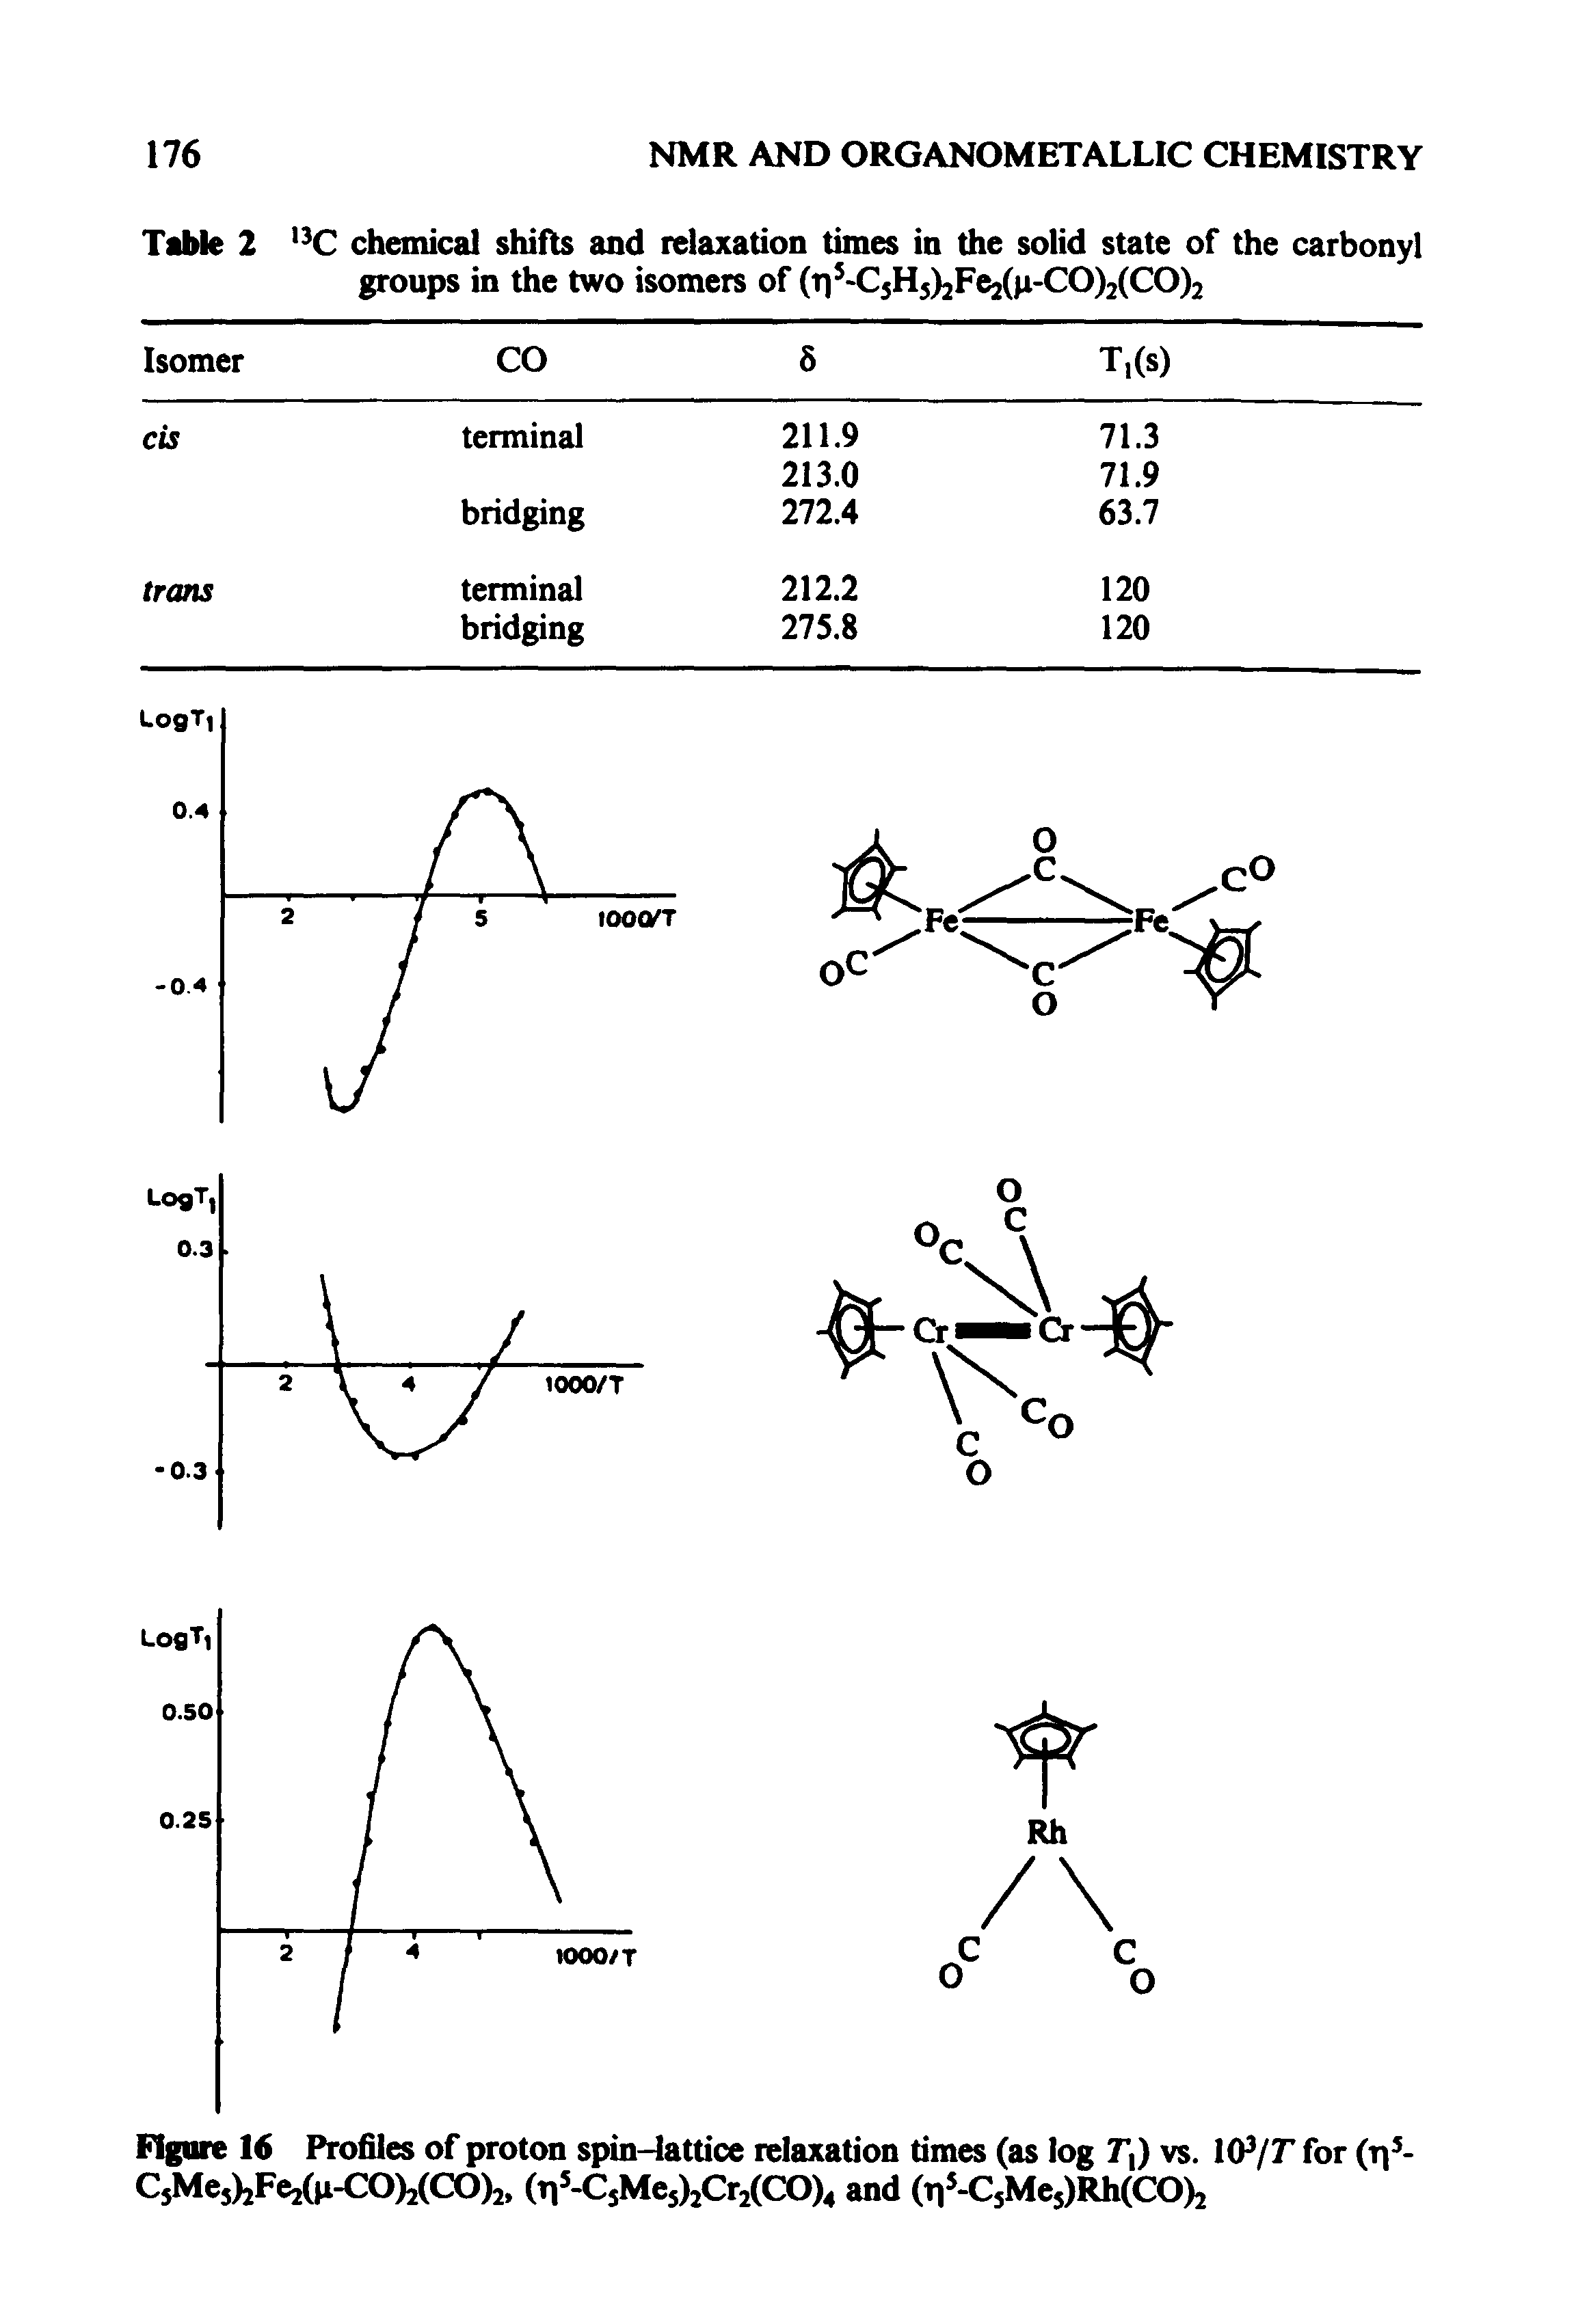 Figure 16 Profiles of proton spin-lattice relaxation times (as log vs. l(P/r for (i -C5Mej)2Fe2(p-CO)2(CO)2. (Ti5-CsMe5)2Cr2(CO)4 and (Ti5-C5Me5)Rh(CO)2...